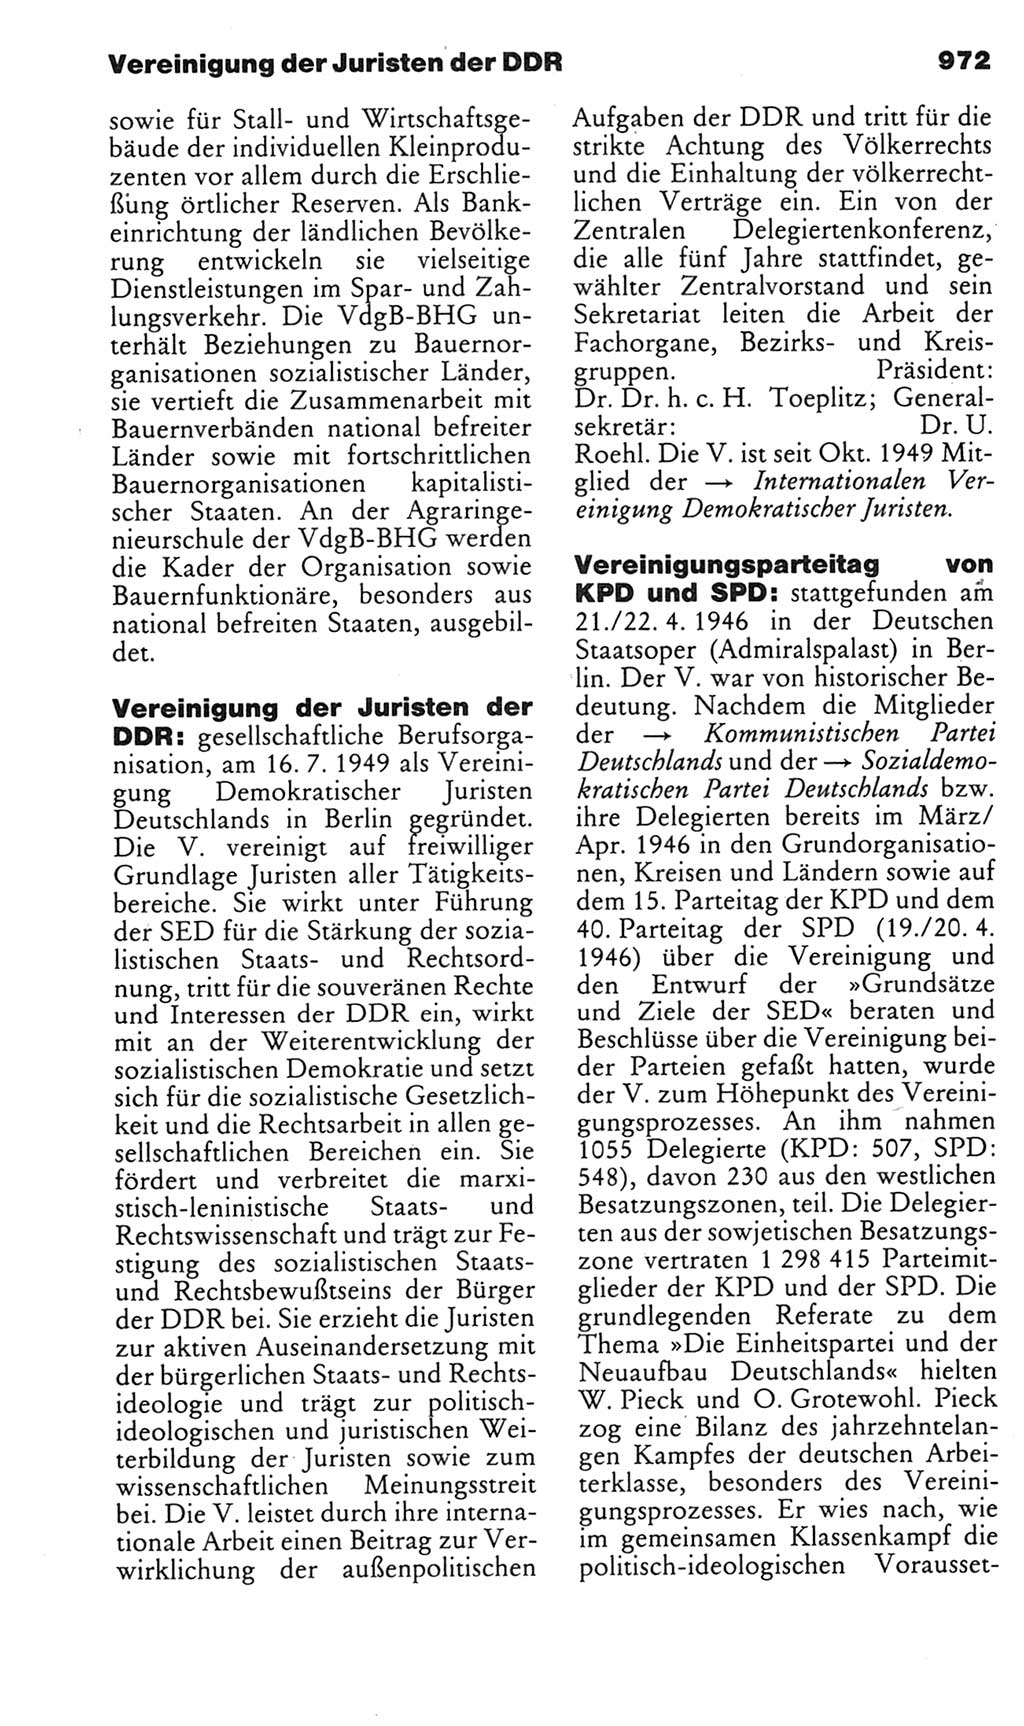 Kleines politisches Wörterbuch [Deutsche Demokratische Republik (DDR)] 1985, Seite 972 (Kl. pol. Wb. DDR 1985, S. 972)